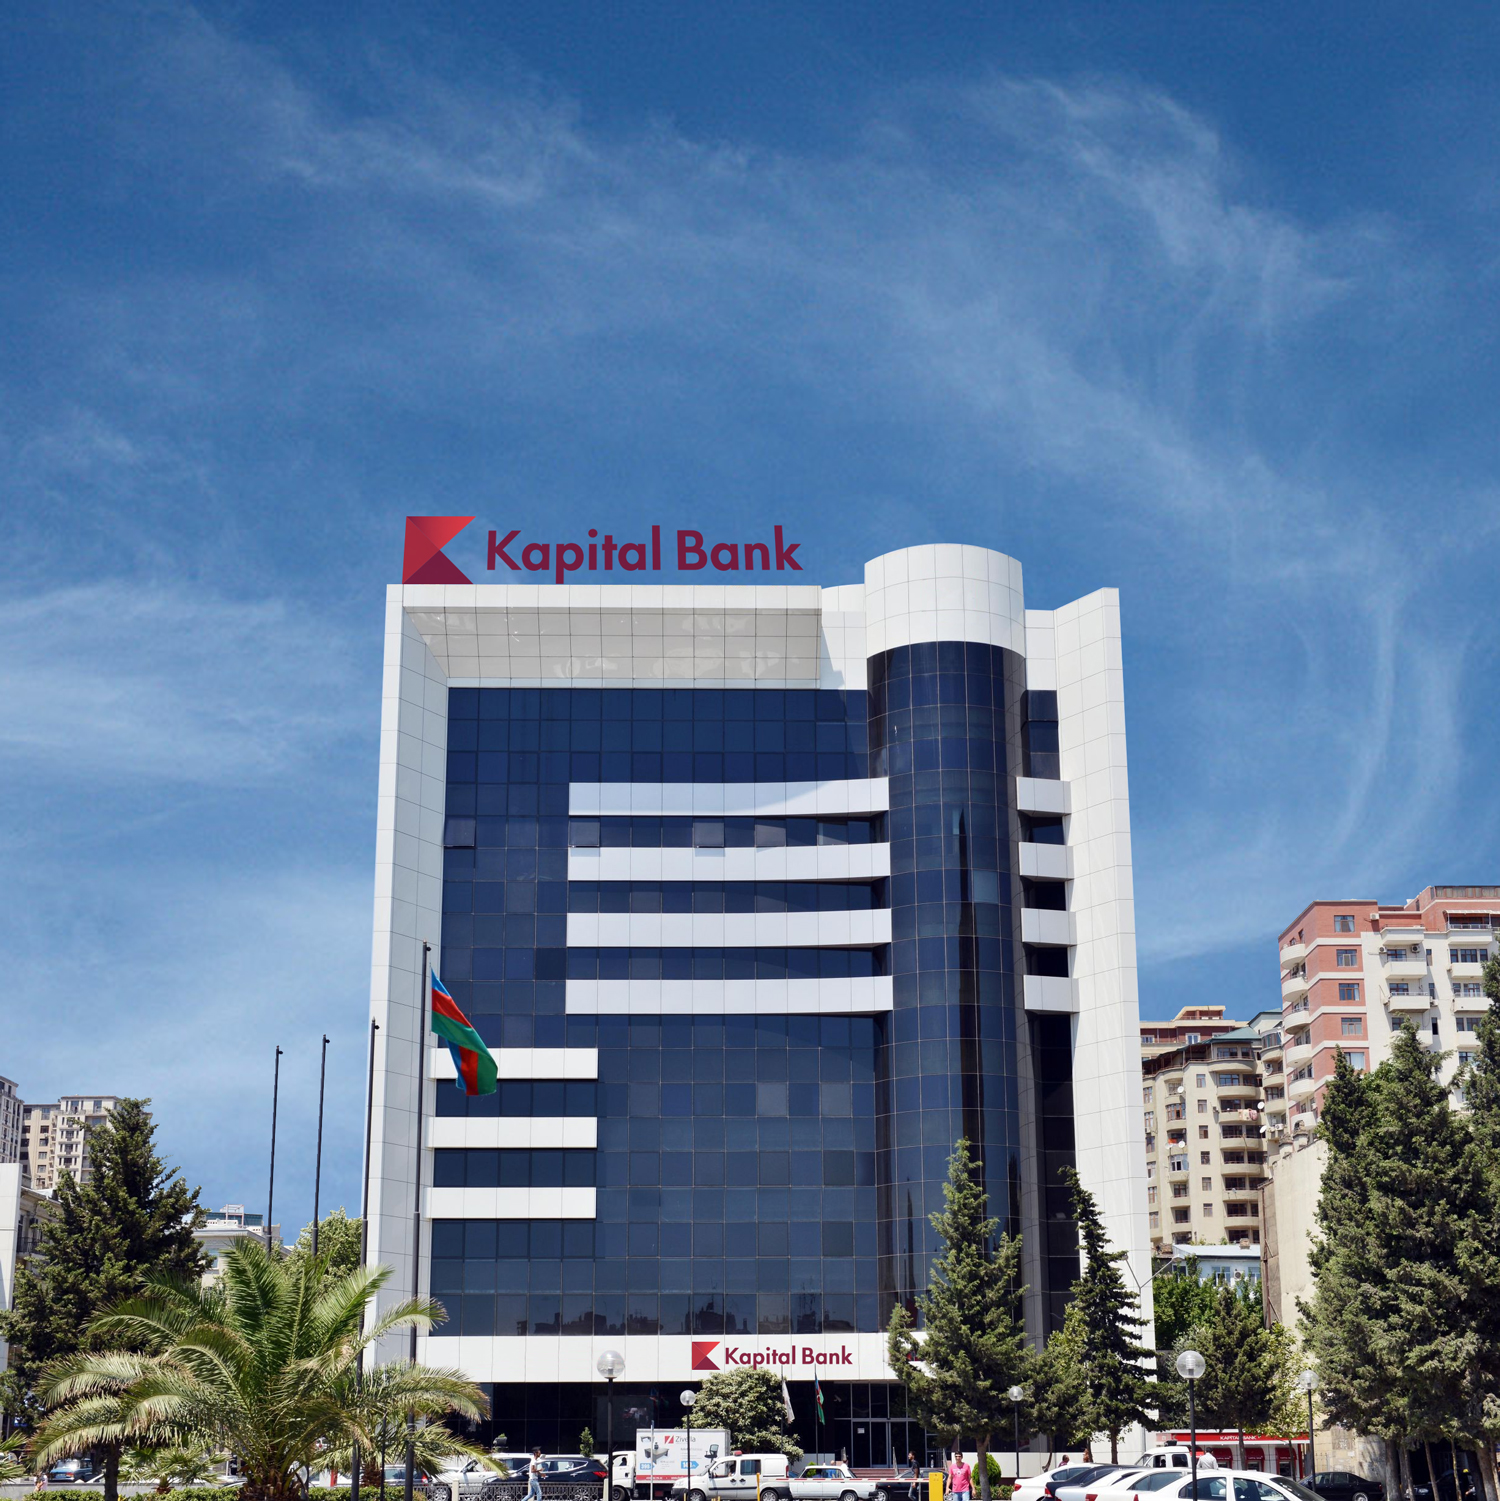 Cb kapitalbank az. Capital Bank Азербайджан. Капитал банк Баку. Капитал банк Узбекистан. Капитал банк Азербайджан лого.